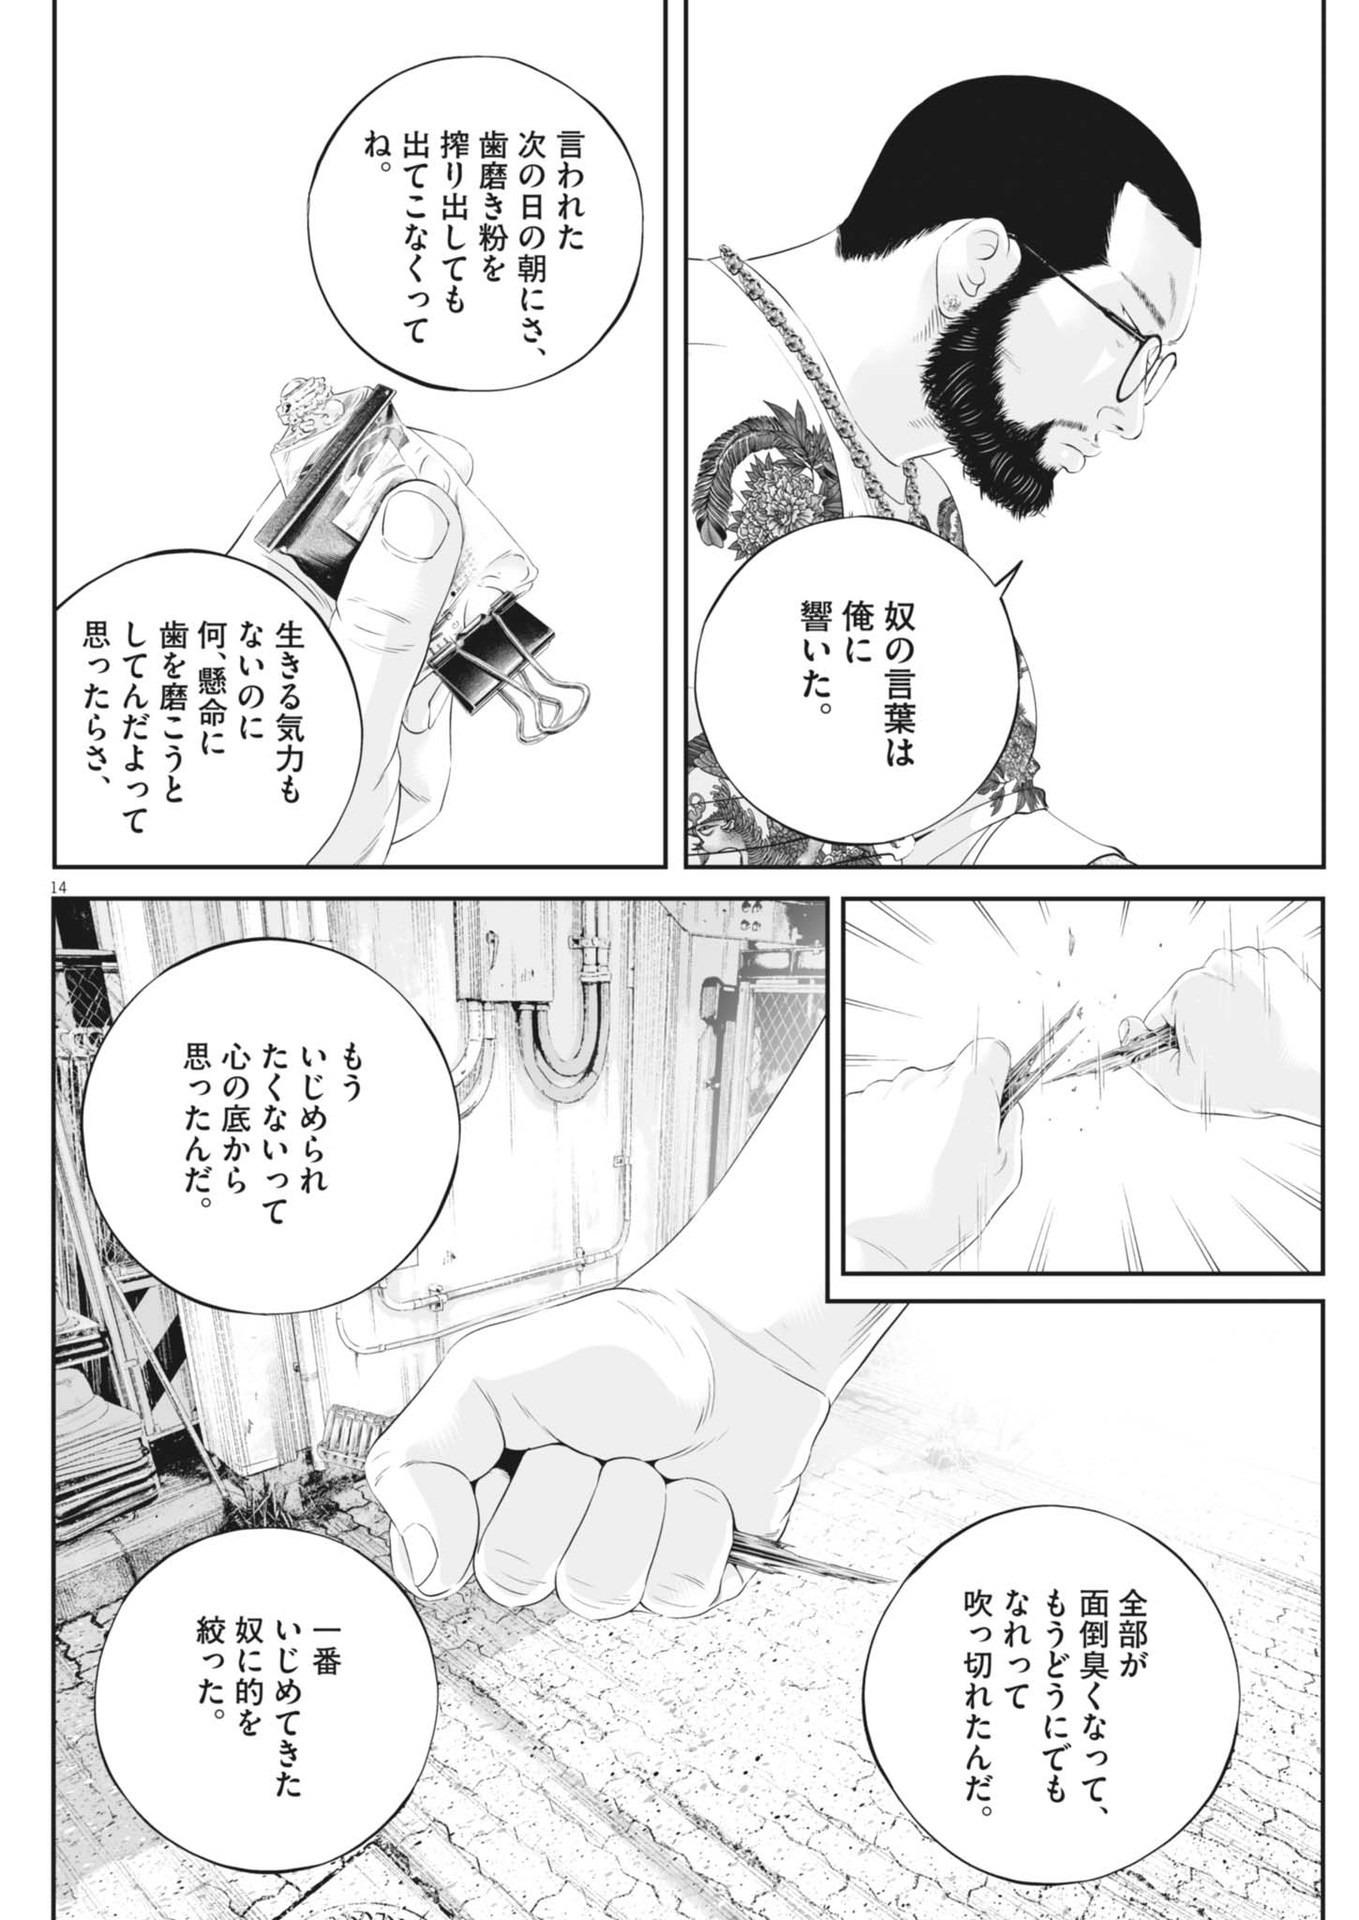 Kujou no Taizai - Chapter 103 - Page 14